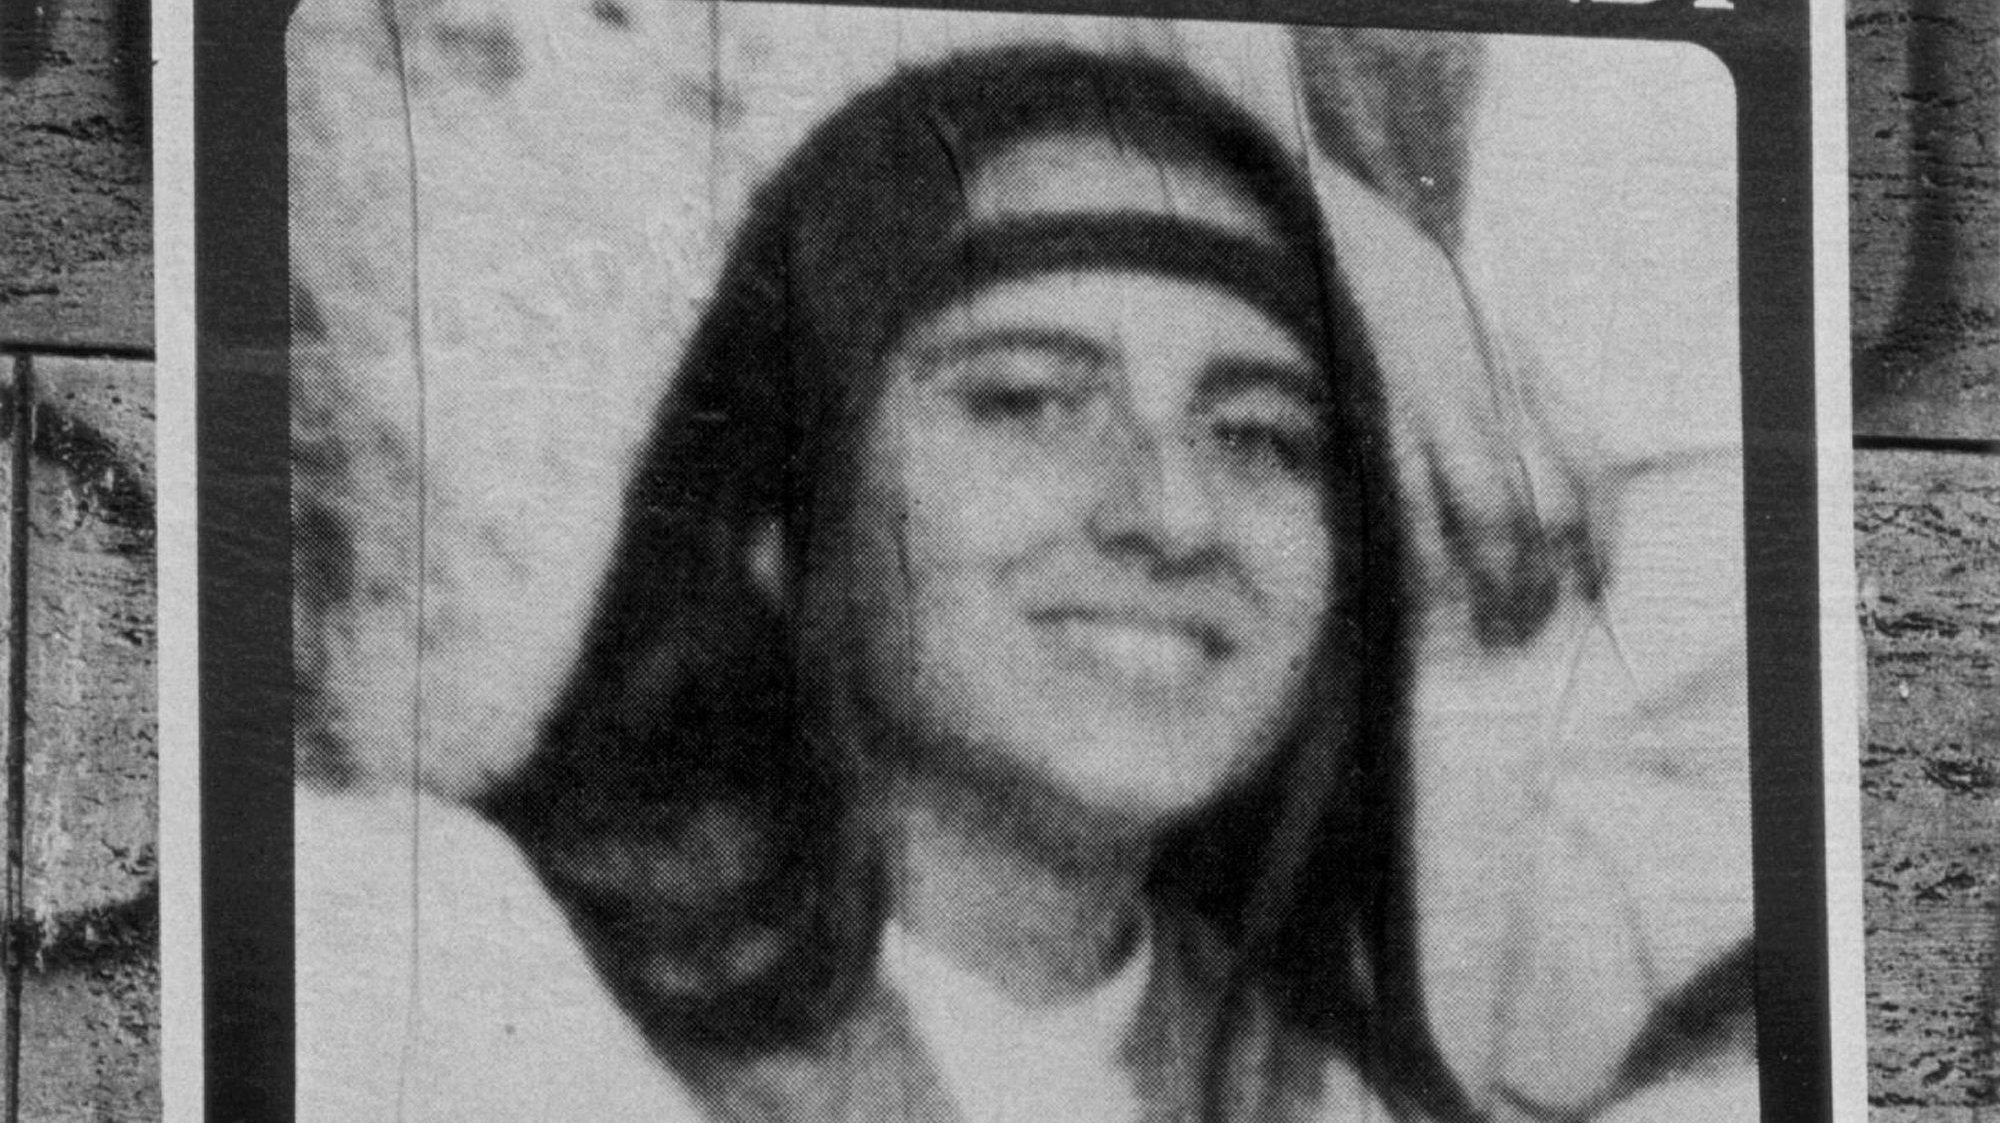 Emanuela Orlandi desapareceu em junho de 1983